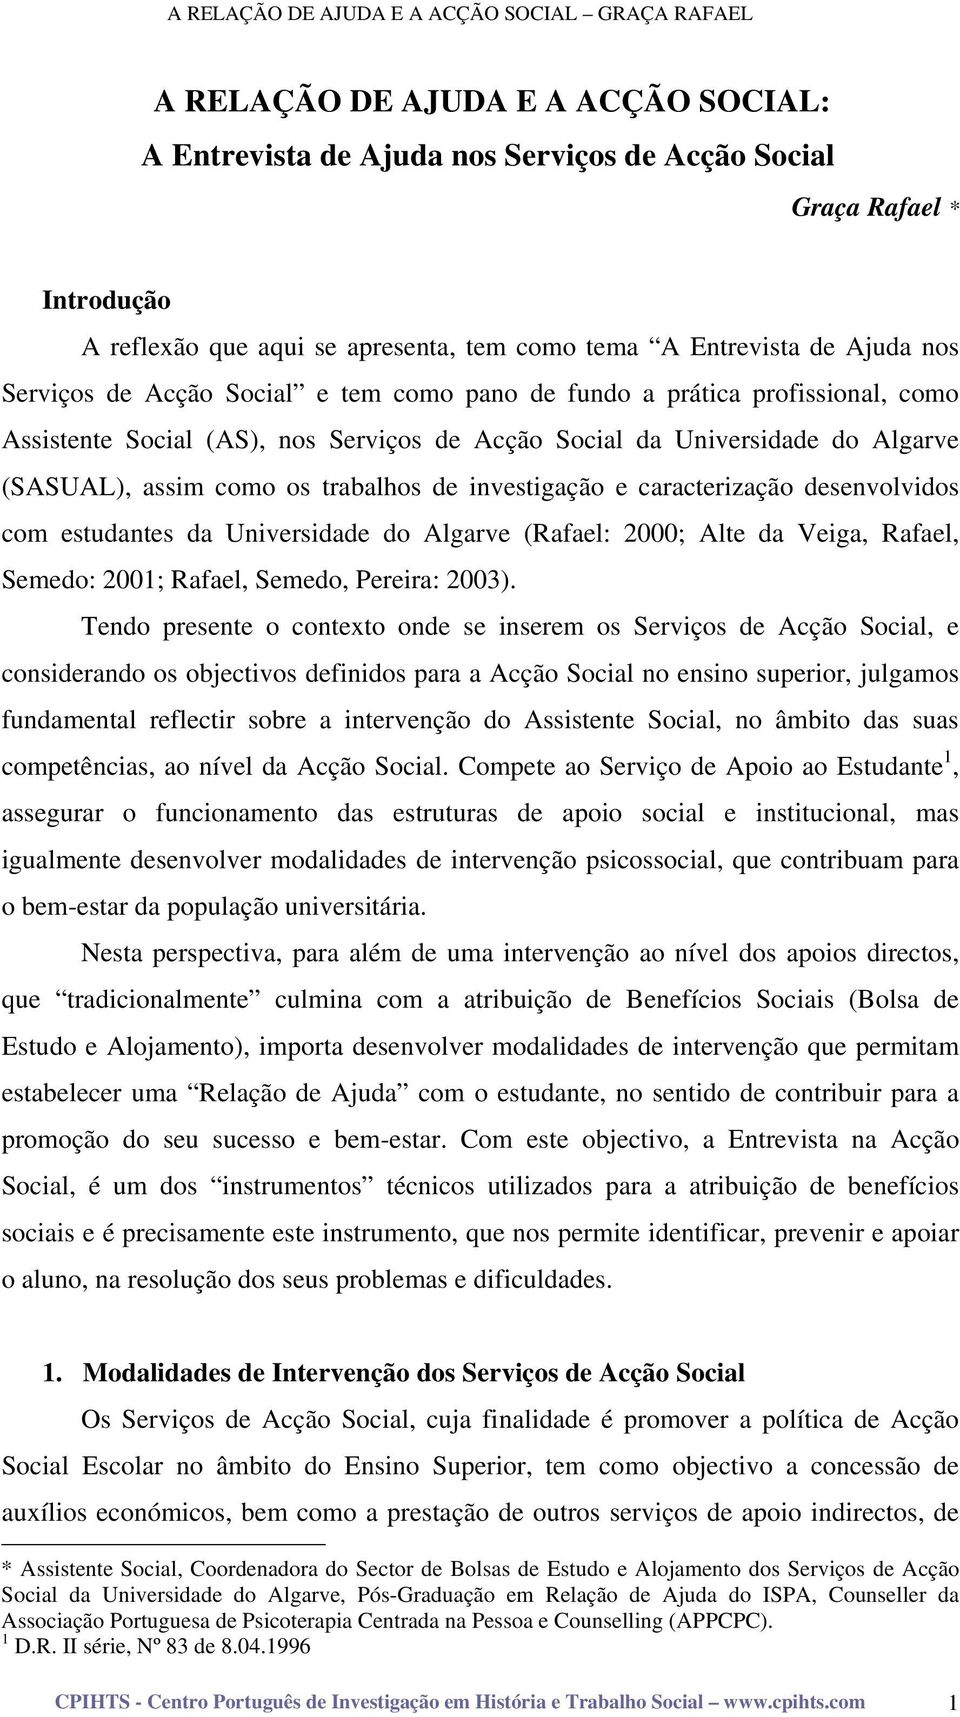 caracterização desenvolvidos com estudantes da Universidade do Algarve (Rafael: 2000; Alte da Veiga, Rafael, Semedo: 2001; Rafael, Semedo, Pereira: 2003).